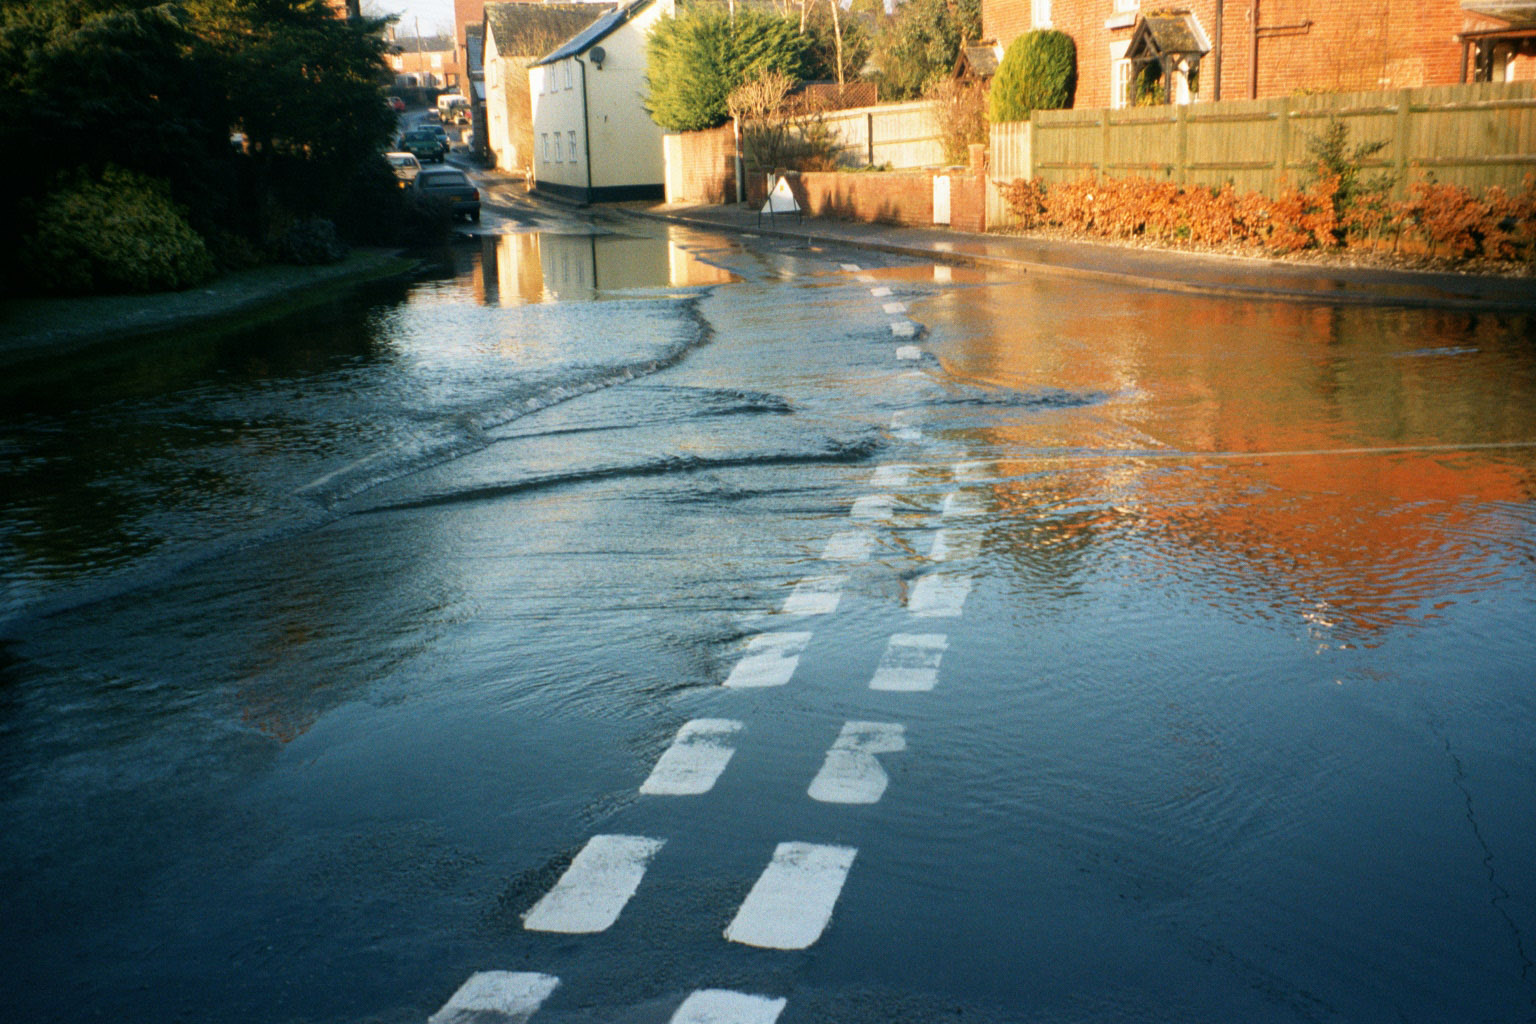 Cross roads at High Street flooding